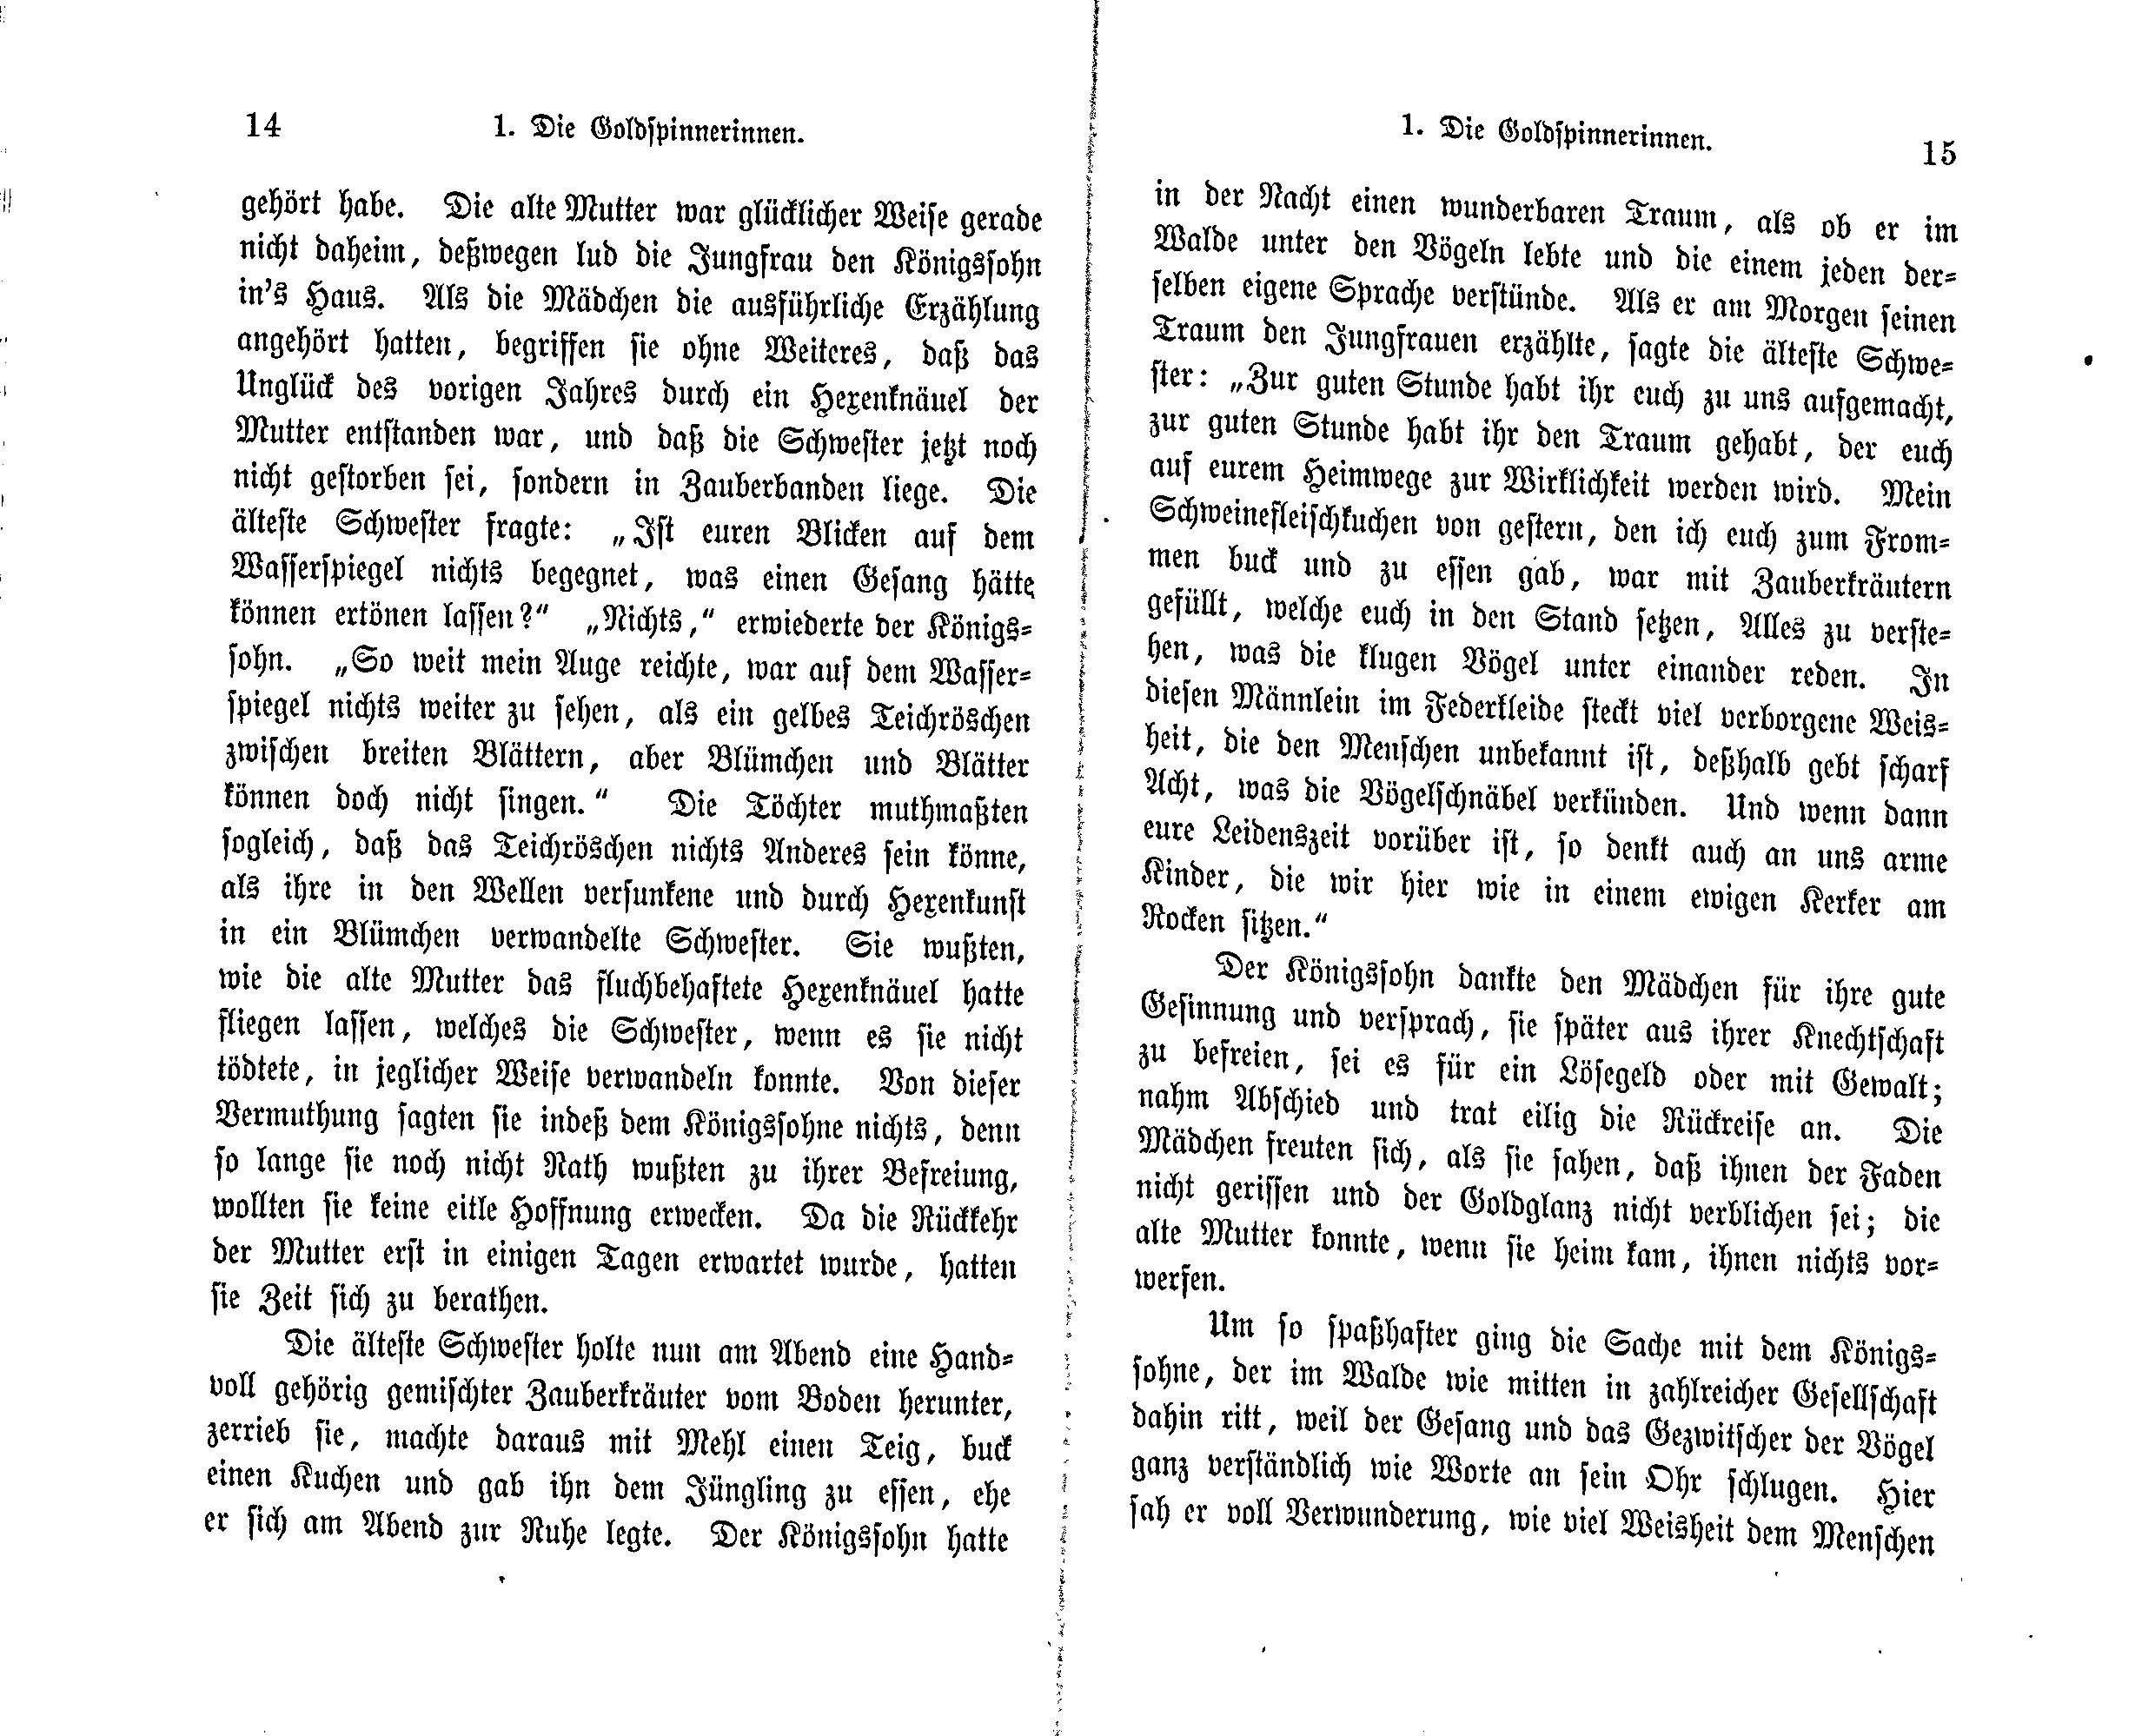 Die Goldspinnerinnen (1869) | 8. (14-15) Main body of text